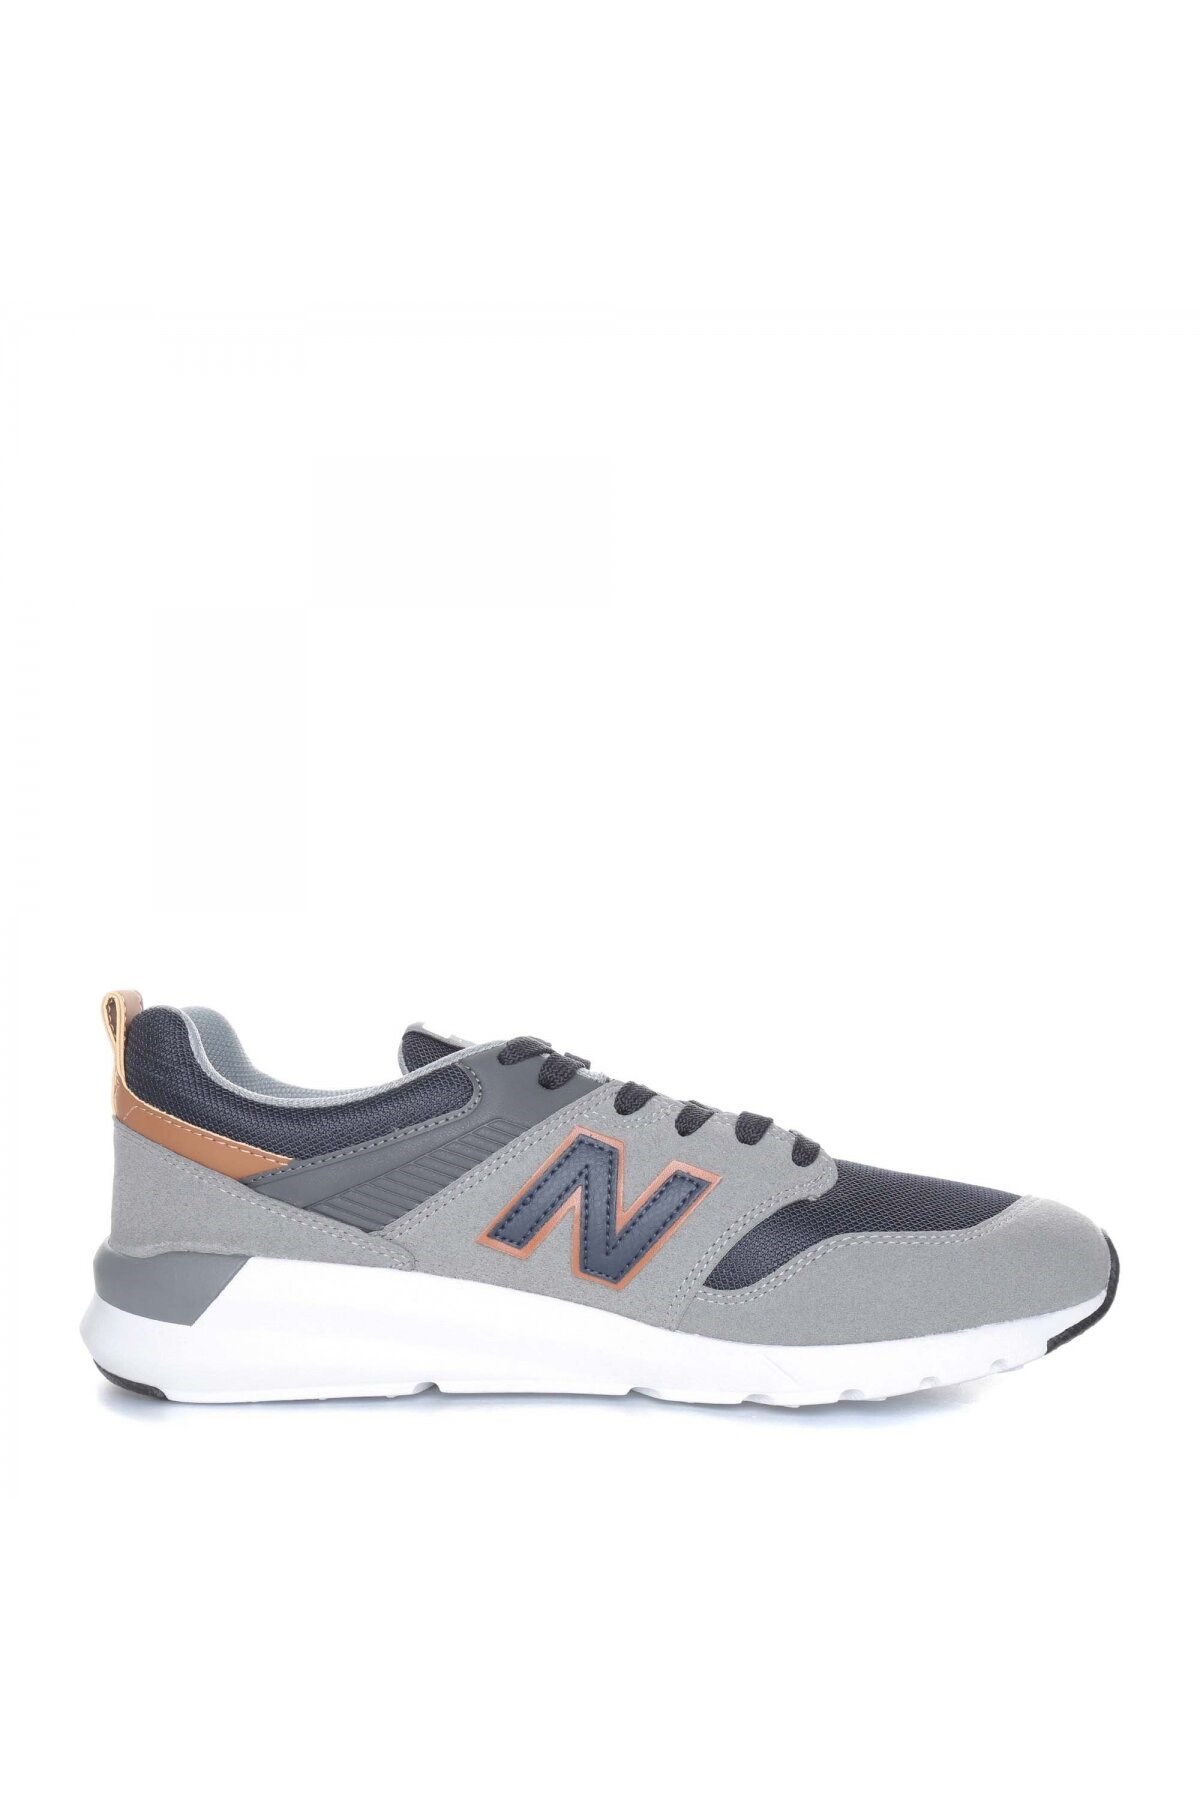 New Balance Erkek Ayakkabı MS009GNS Grey